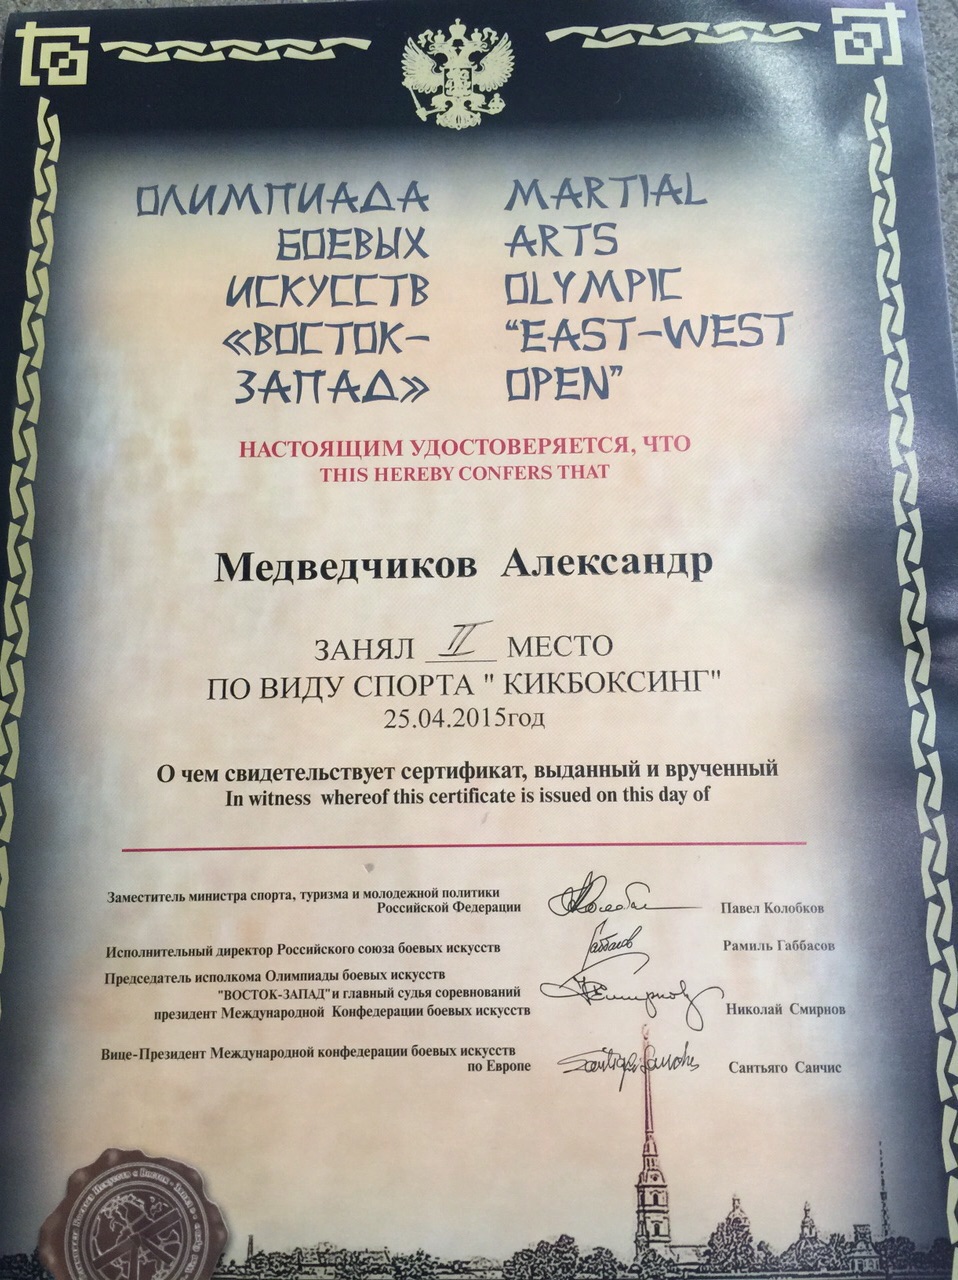 Сертификат турнира "Петровские звезды", Фото с места события из других источников